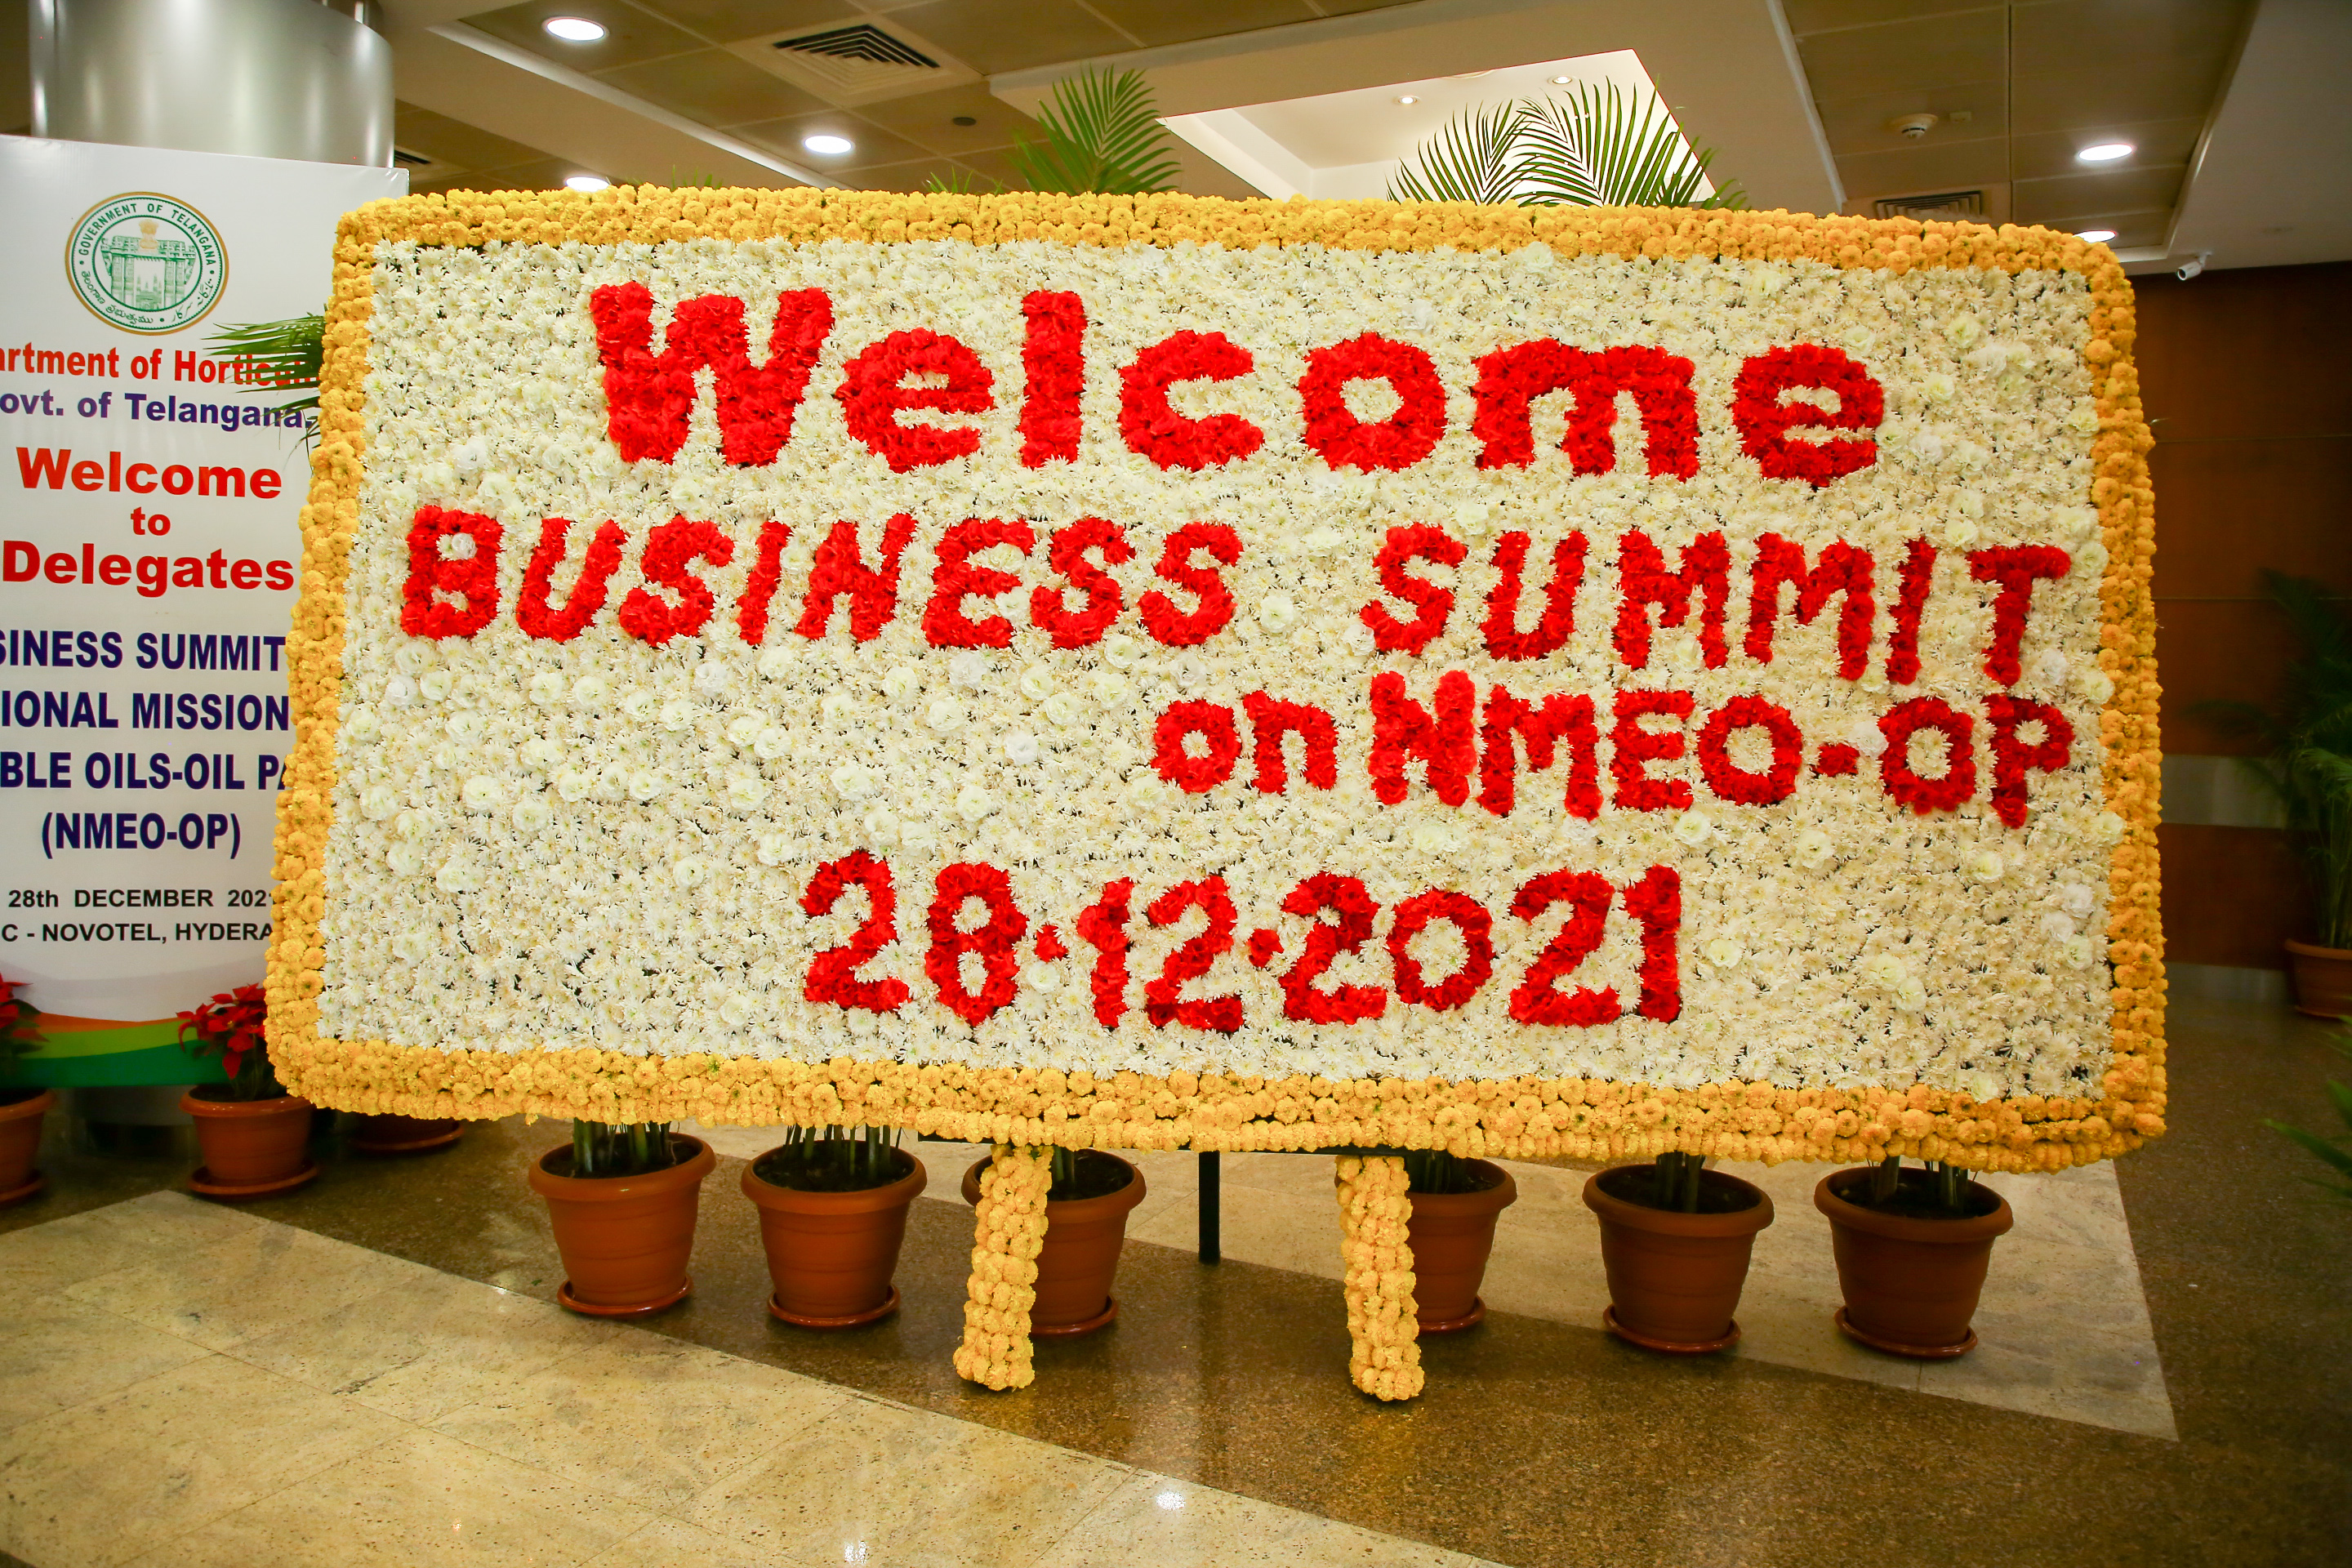 Business Summit in Hyderabad